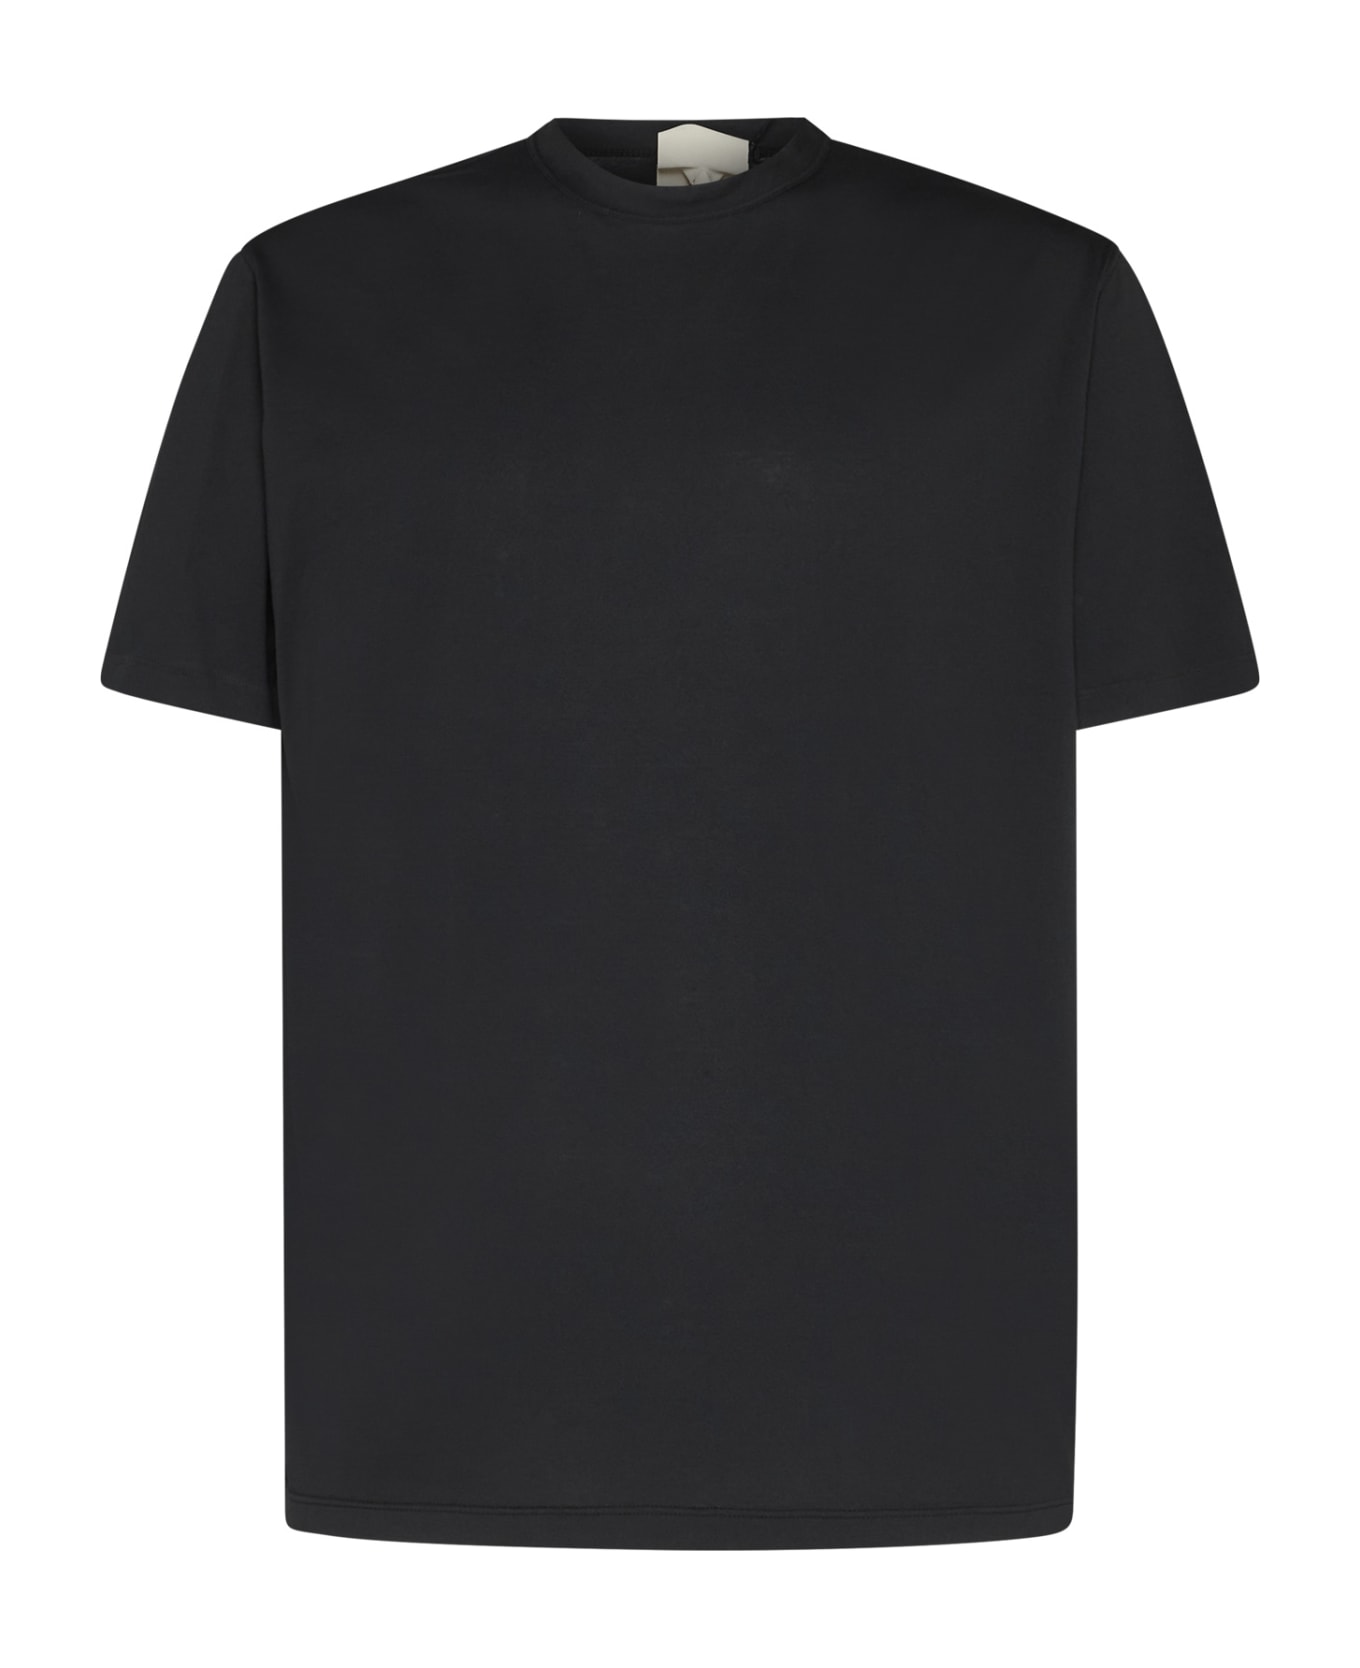 Ten C T-shirt - BLACK シャツ